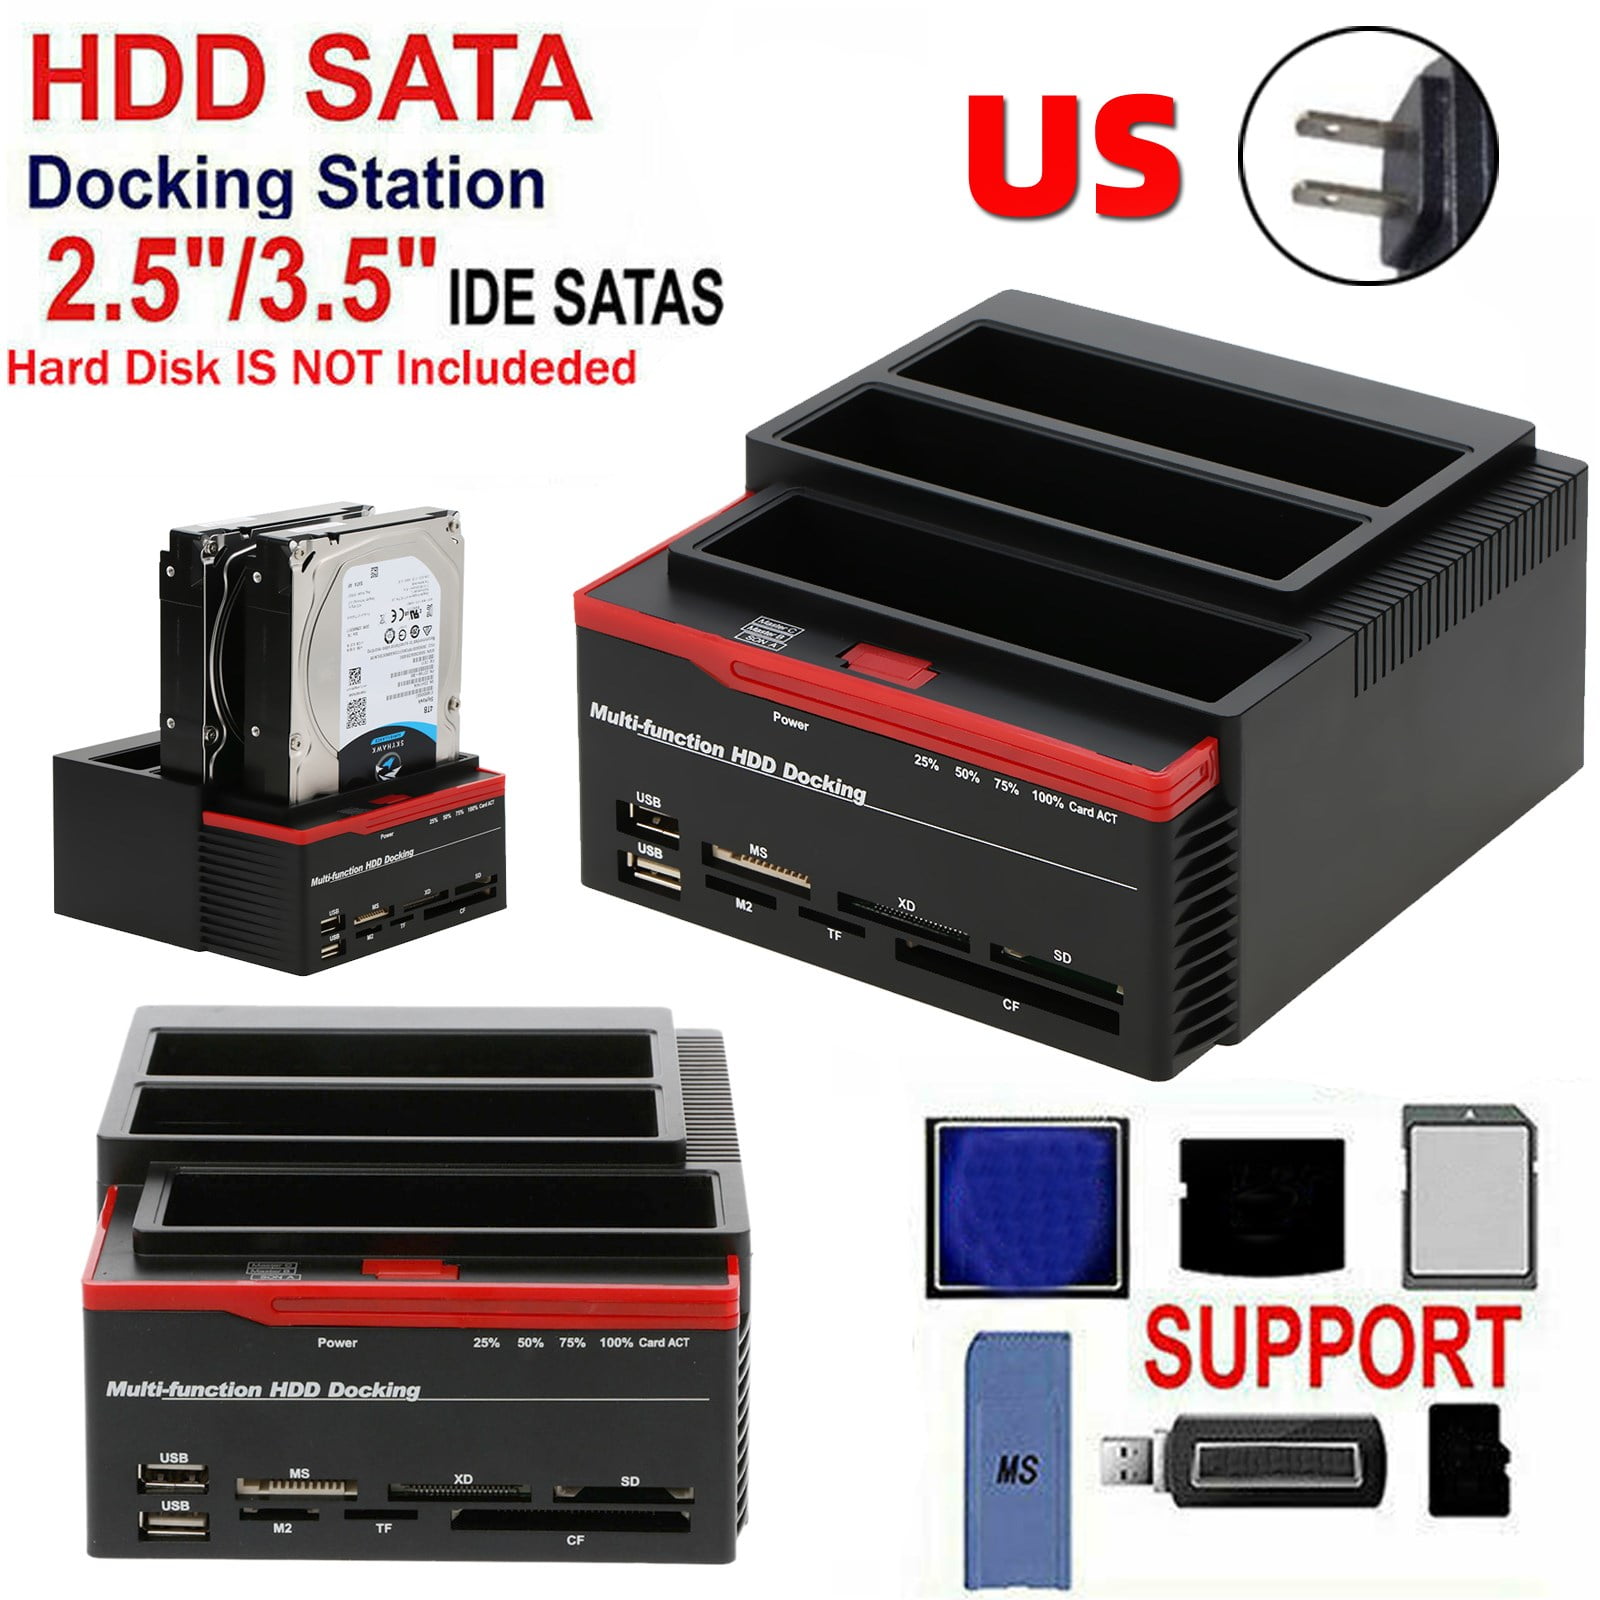 3 IDE SATA 2.5" 3.5" Hard Drive Clone Docking Card Reader - Walmart.com